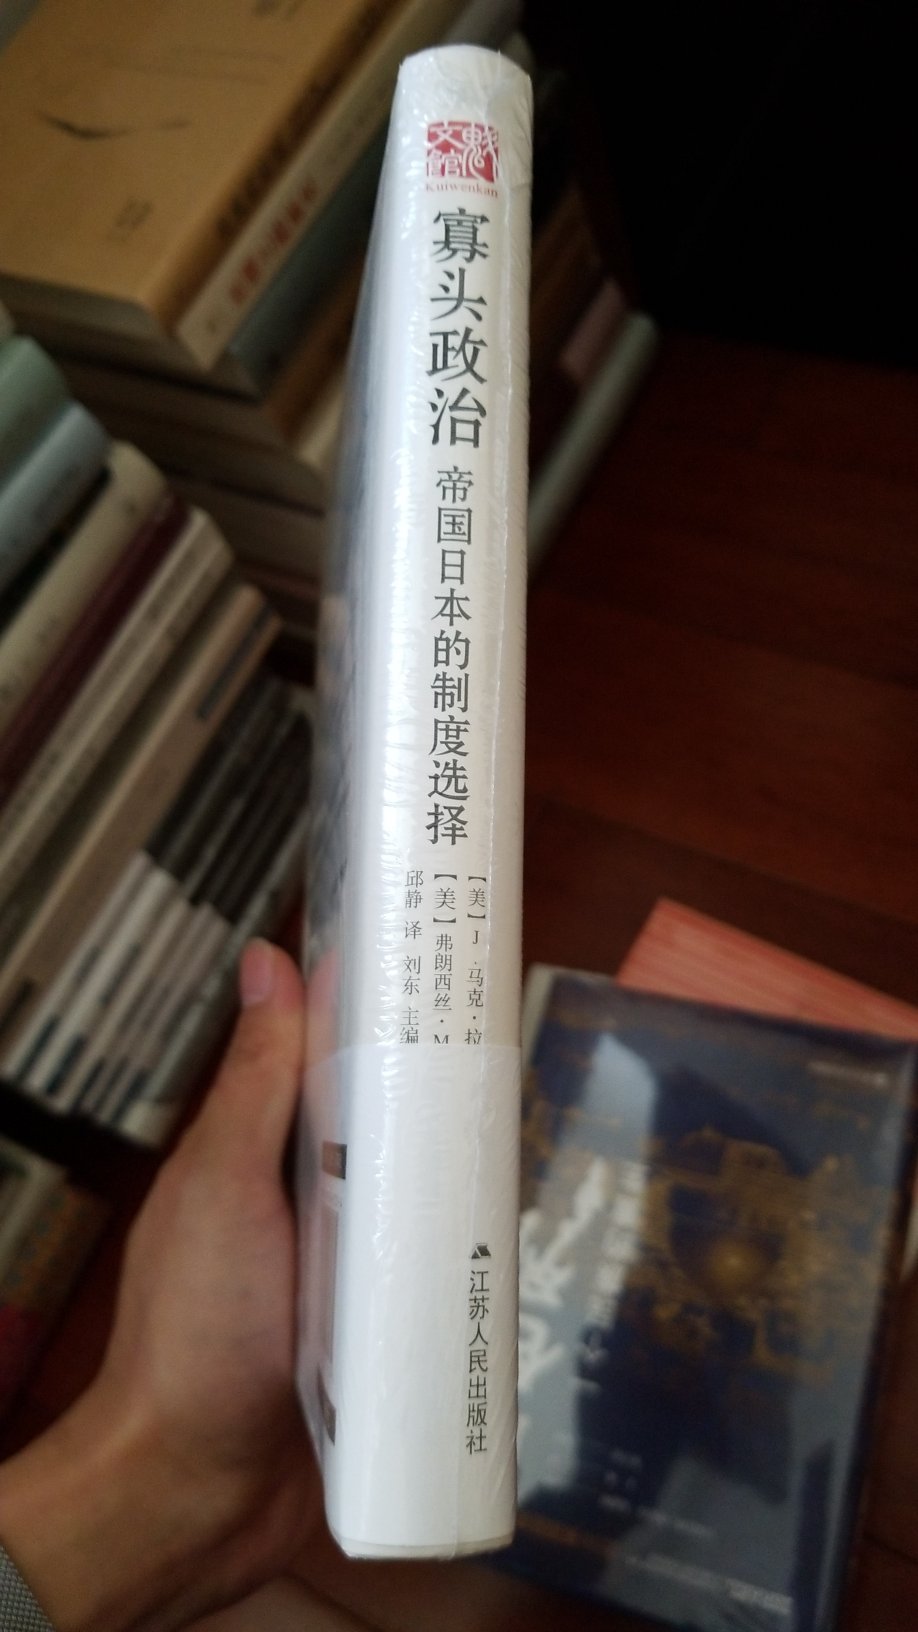 江苏人民出版社的定价一向良心，但是跟那套平装海外中国研究系列比起来，还是有些高，我不需要精装，需要便宜。